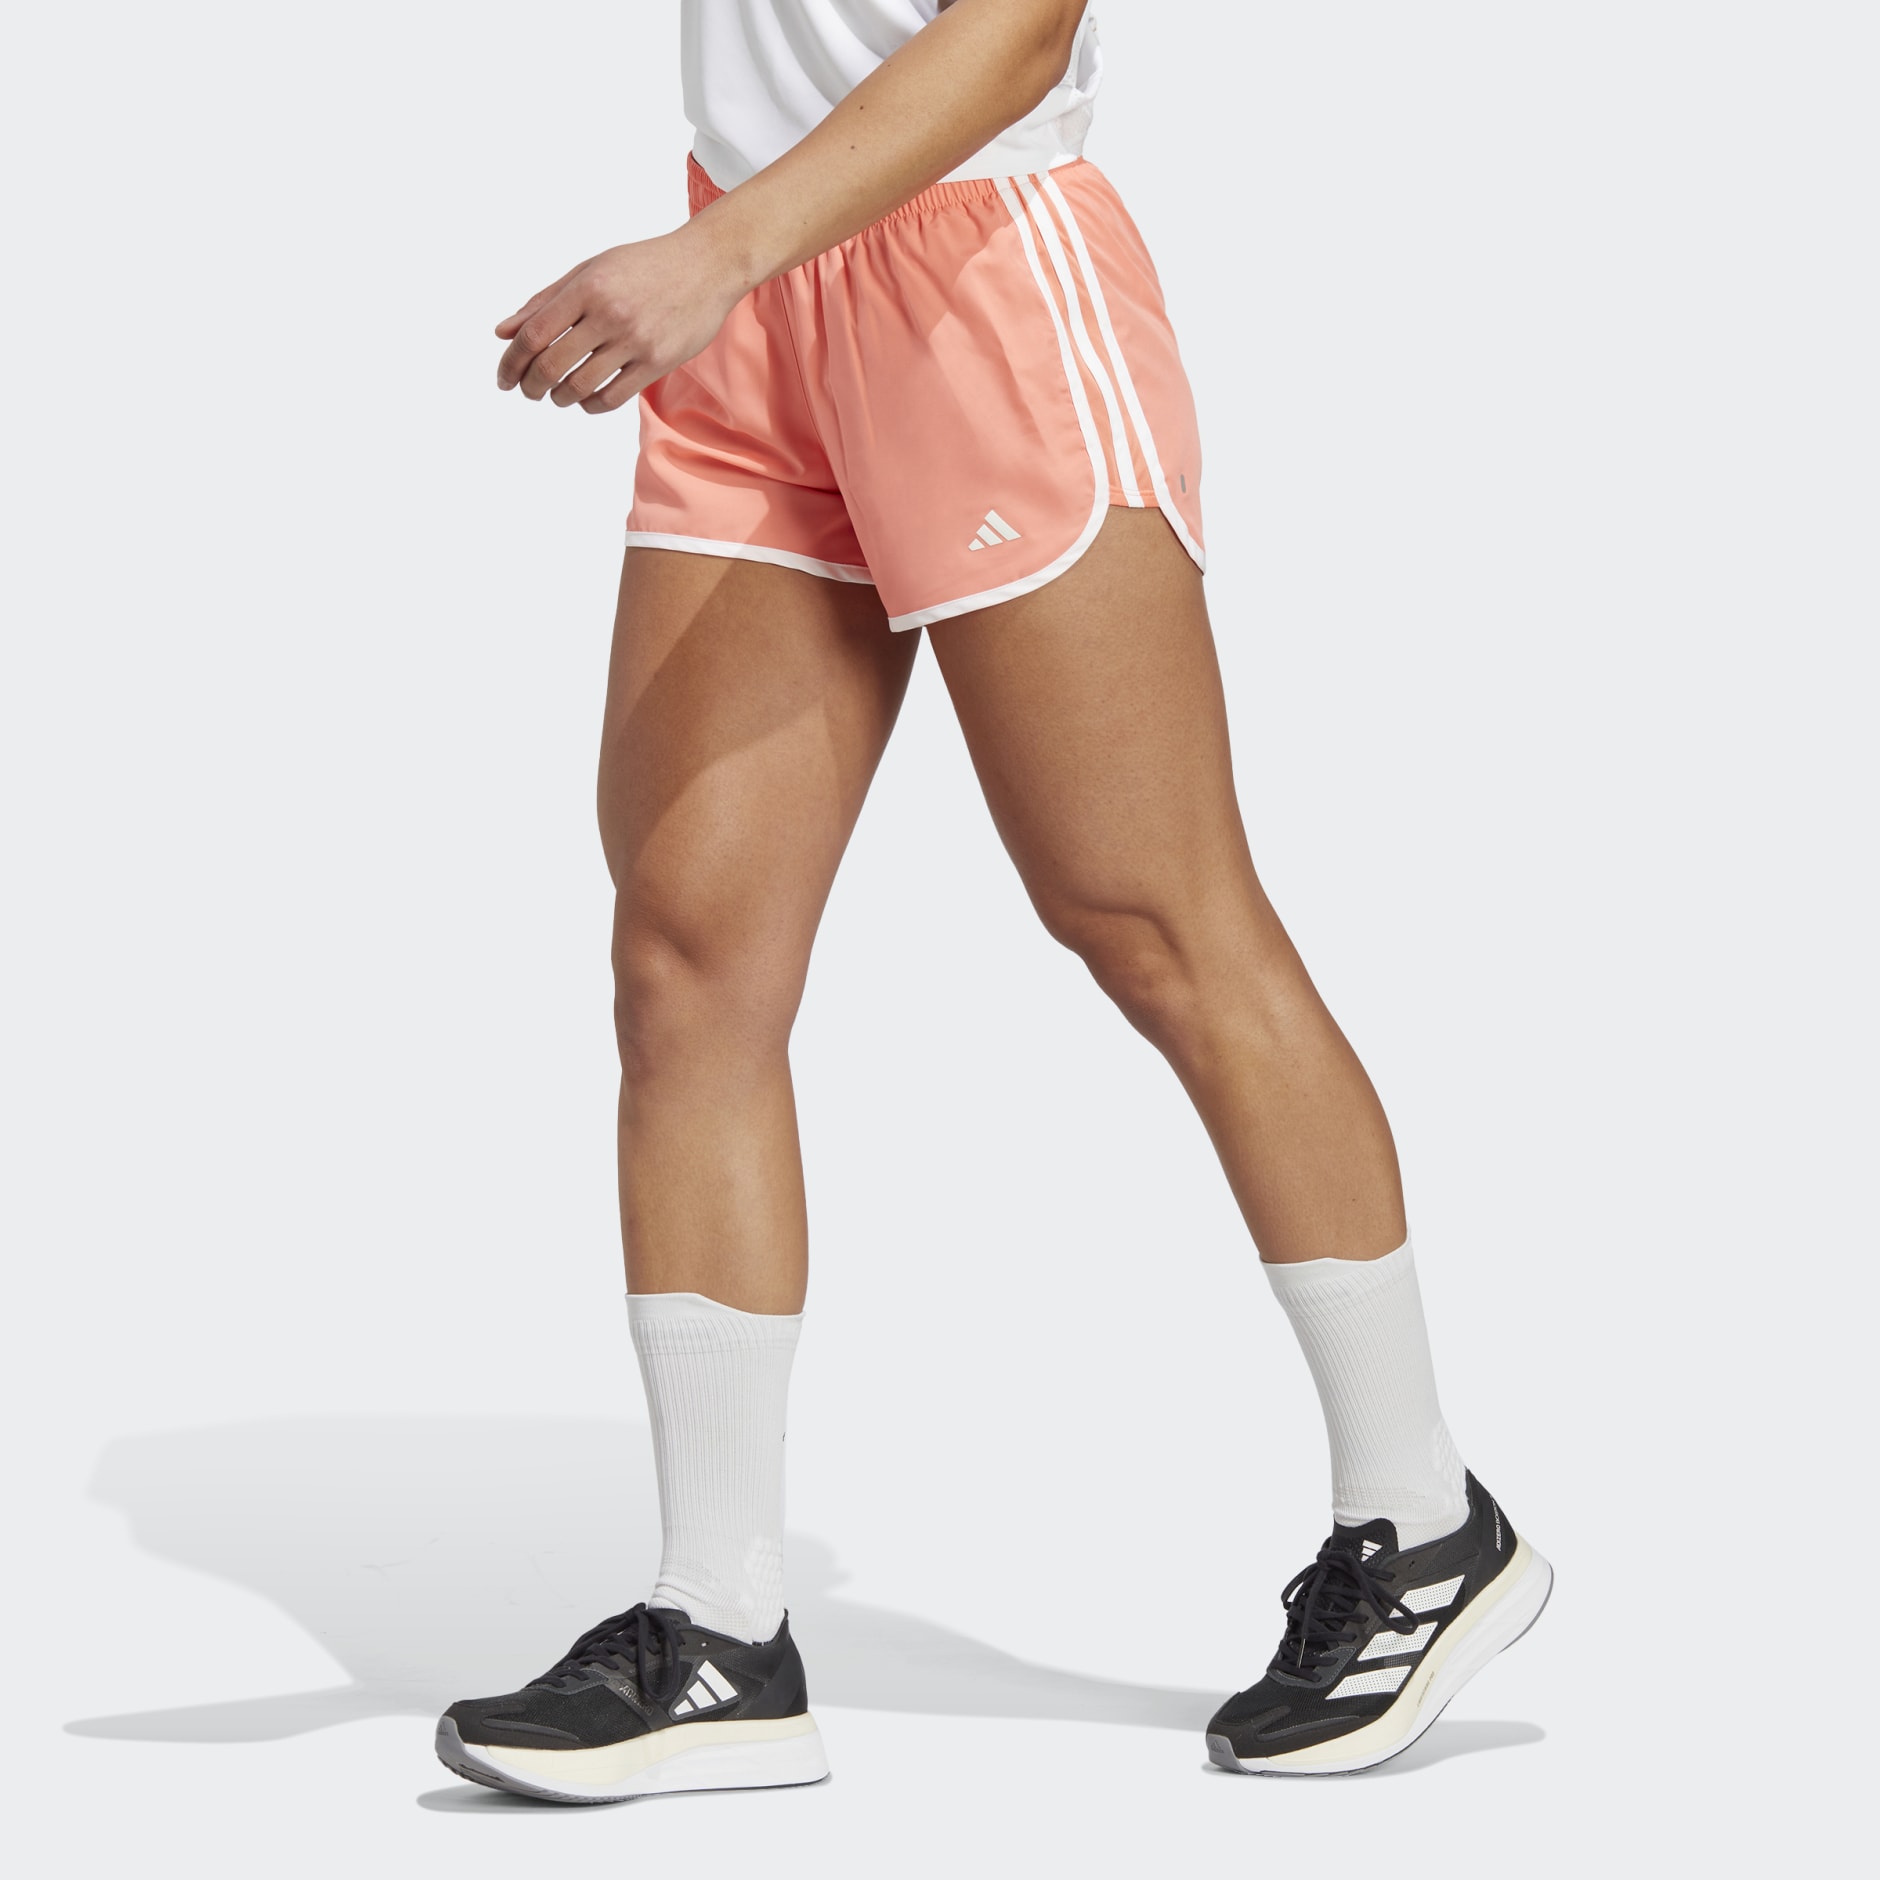 Clothing - Marathon 20 Running Shorts - Orange